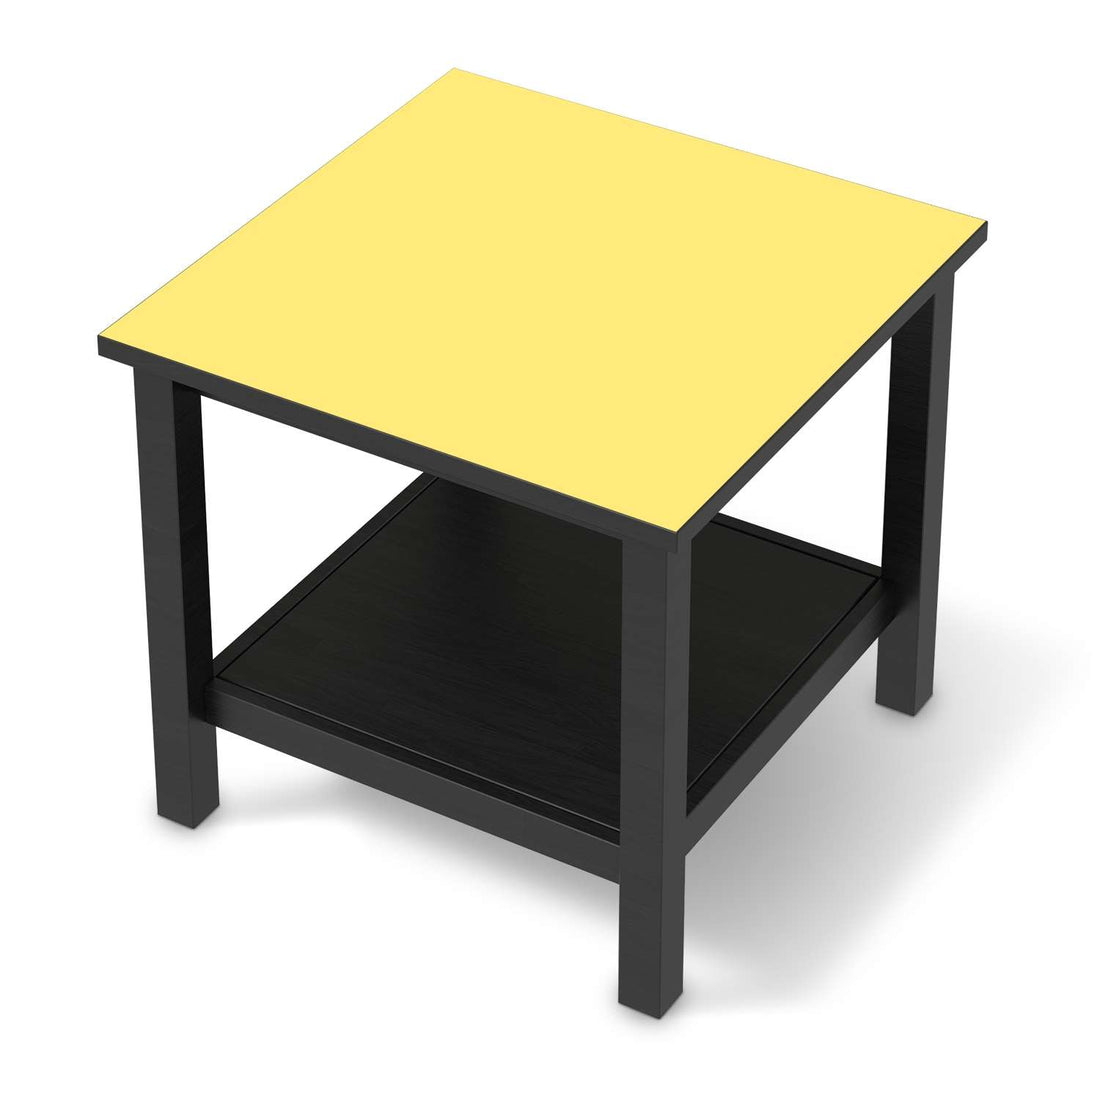 Möbel Klebefolie Gelb Light - IKEA Hemnes Beistelltisch 55x55 cm - schwarz